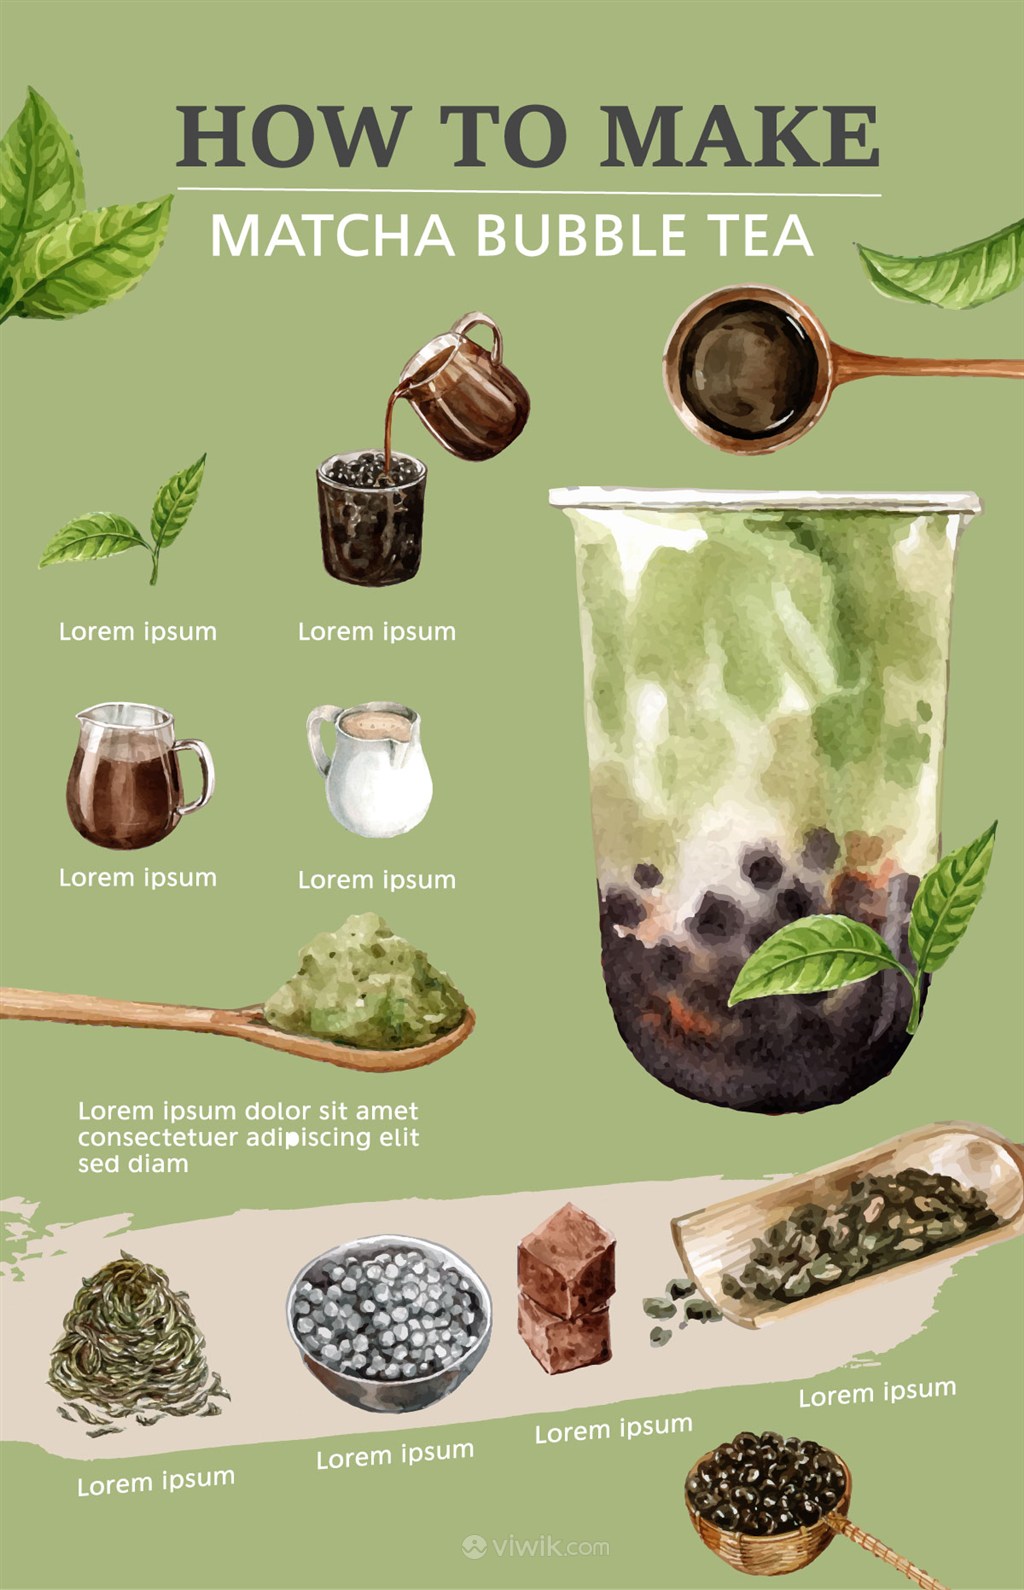 奶茶菜单设计模板背景图片